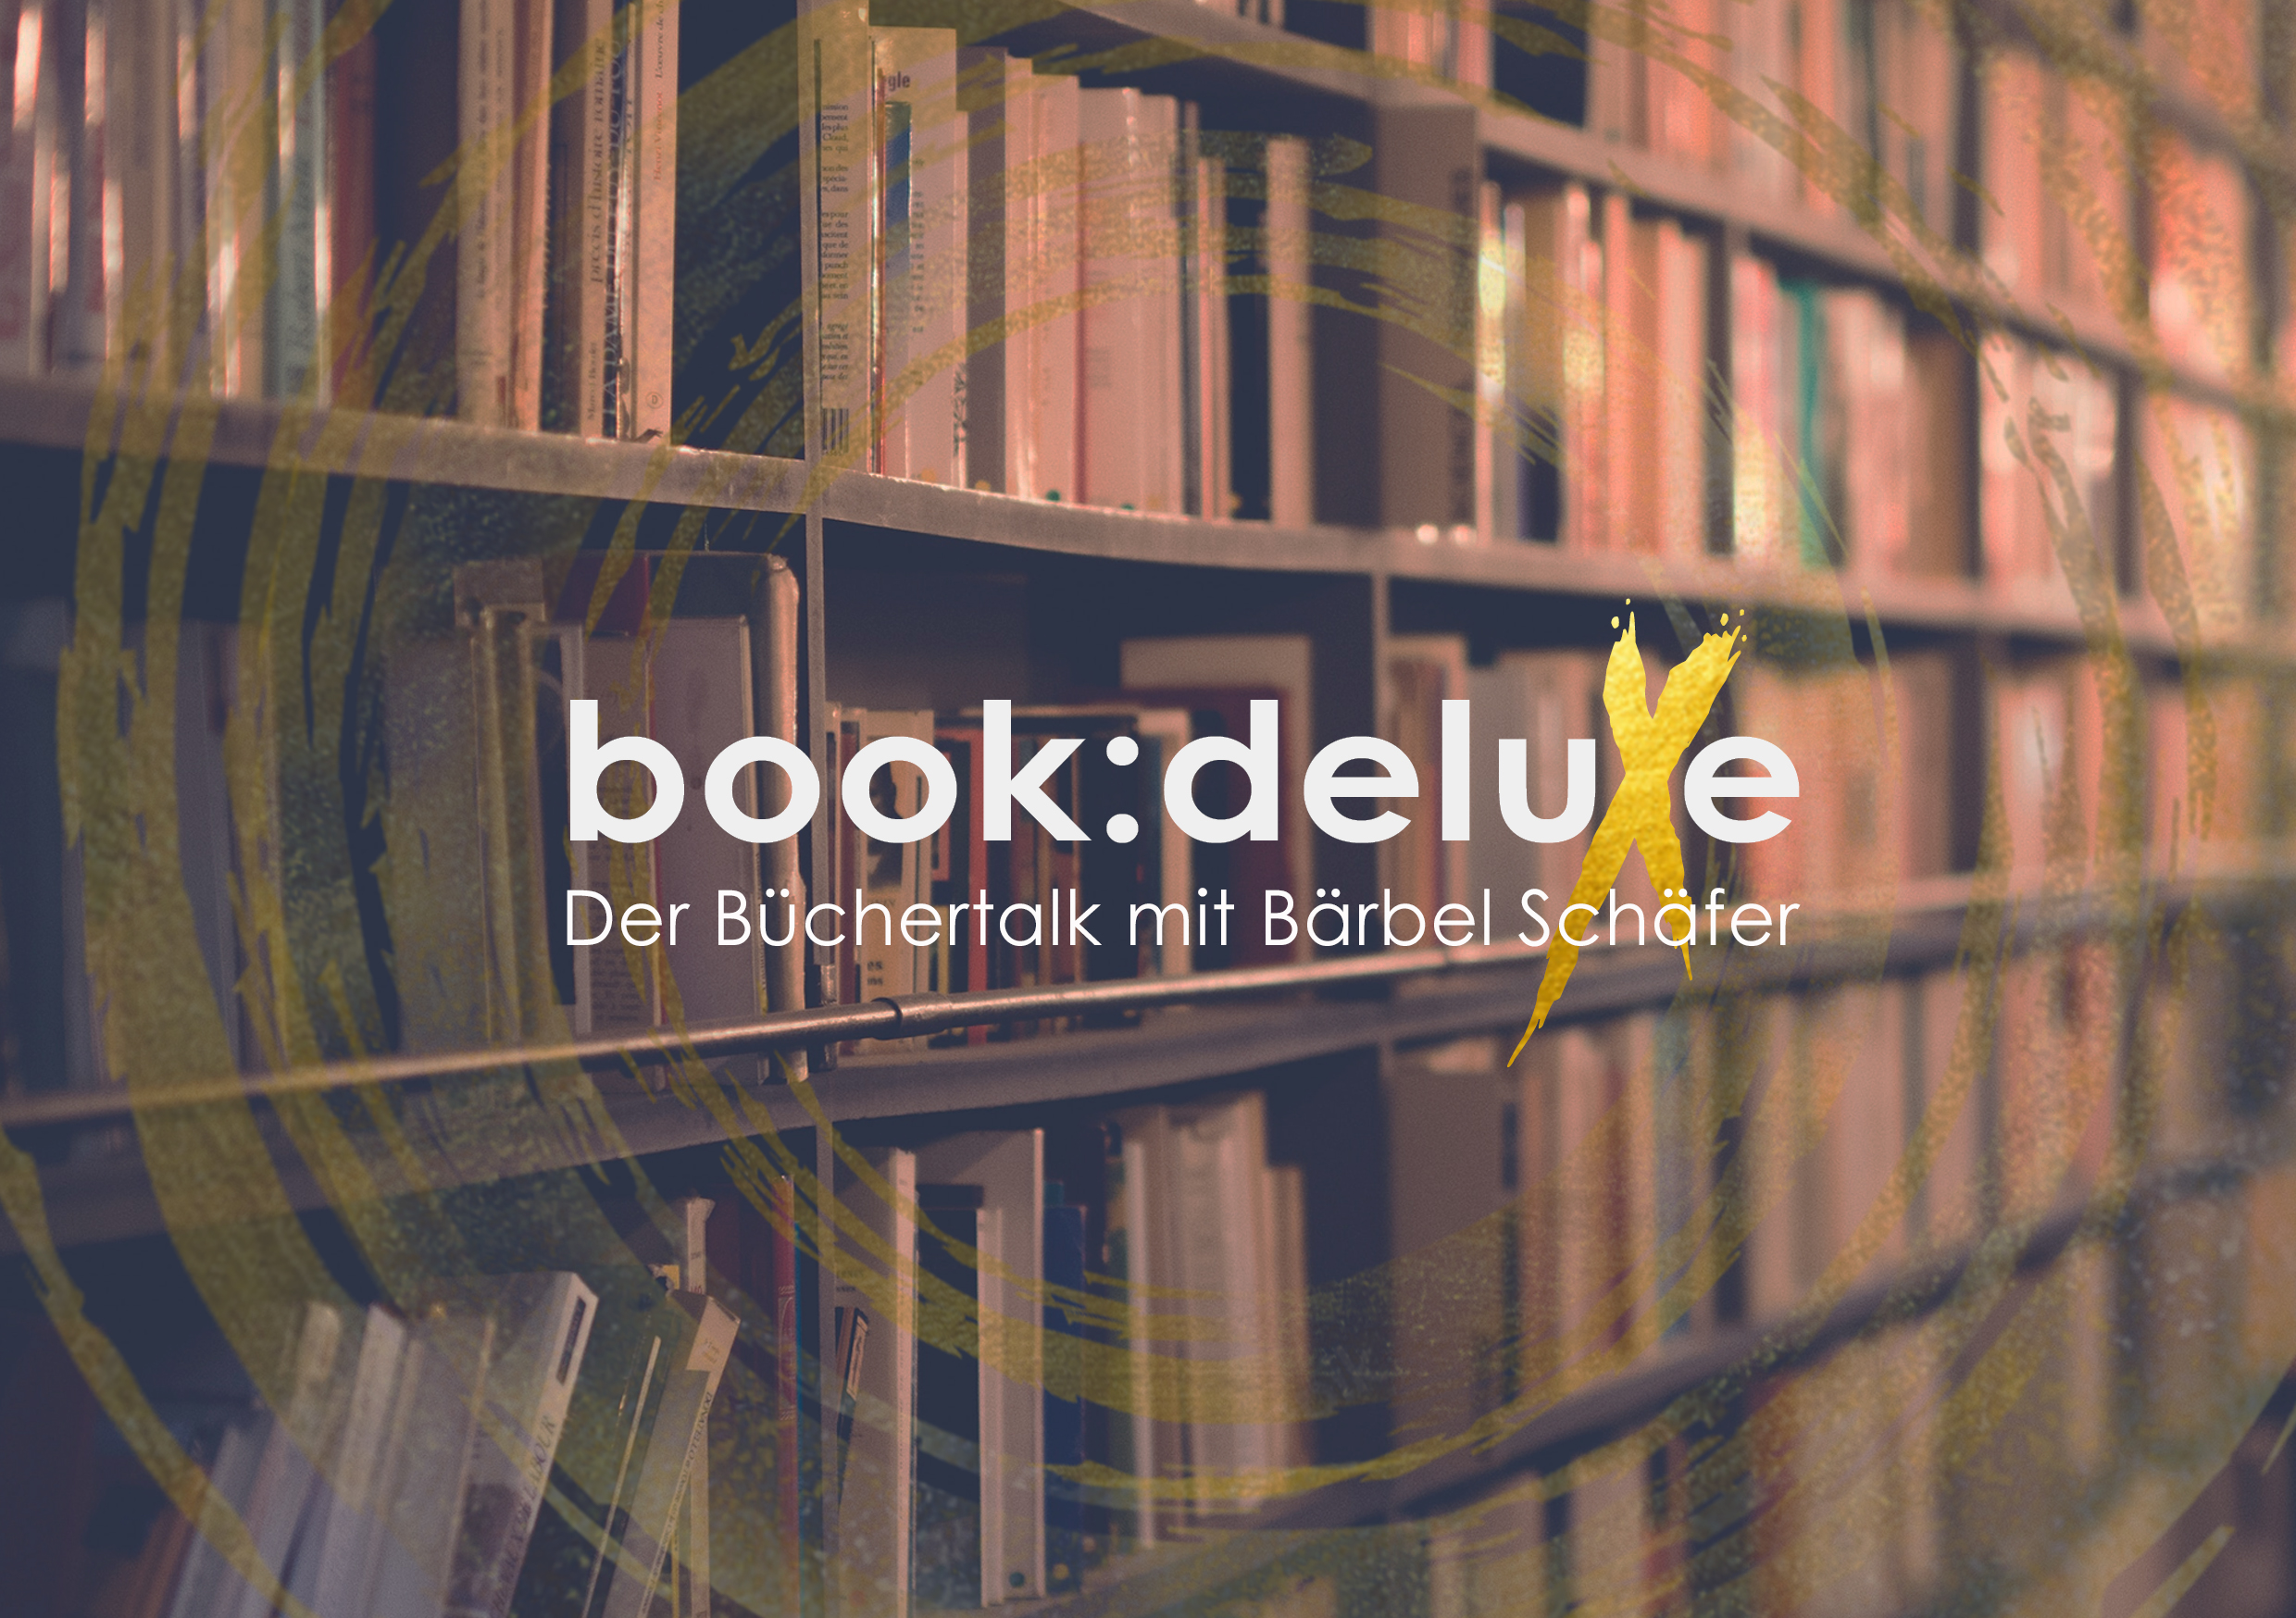 Book:deluxe mit Bärbel Schäfer Youtube Büchertalk